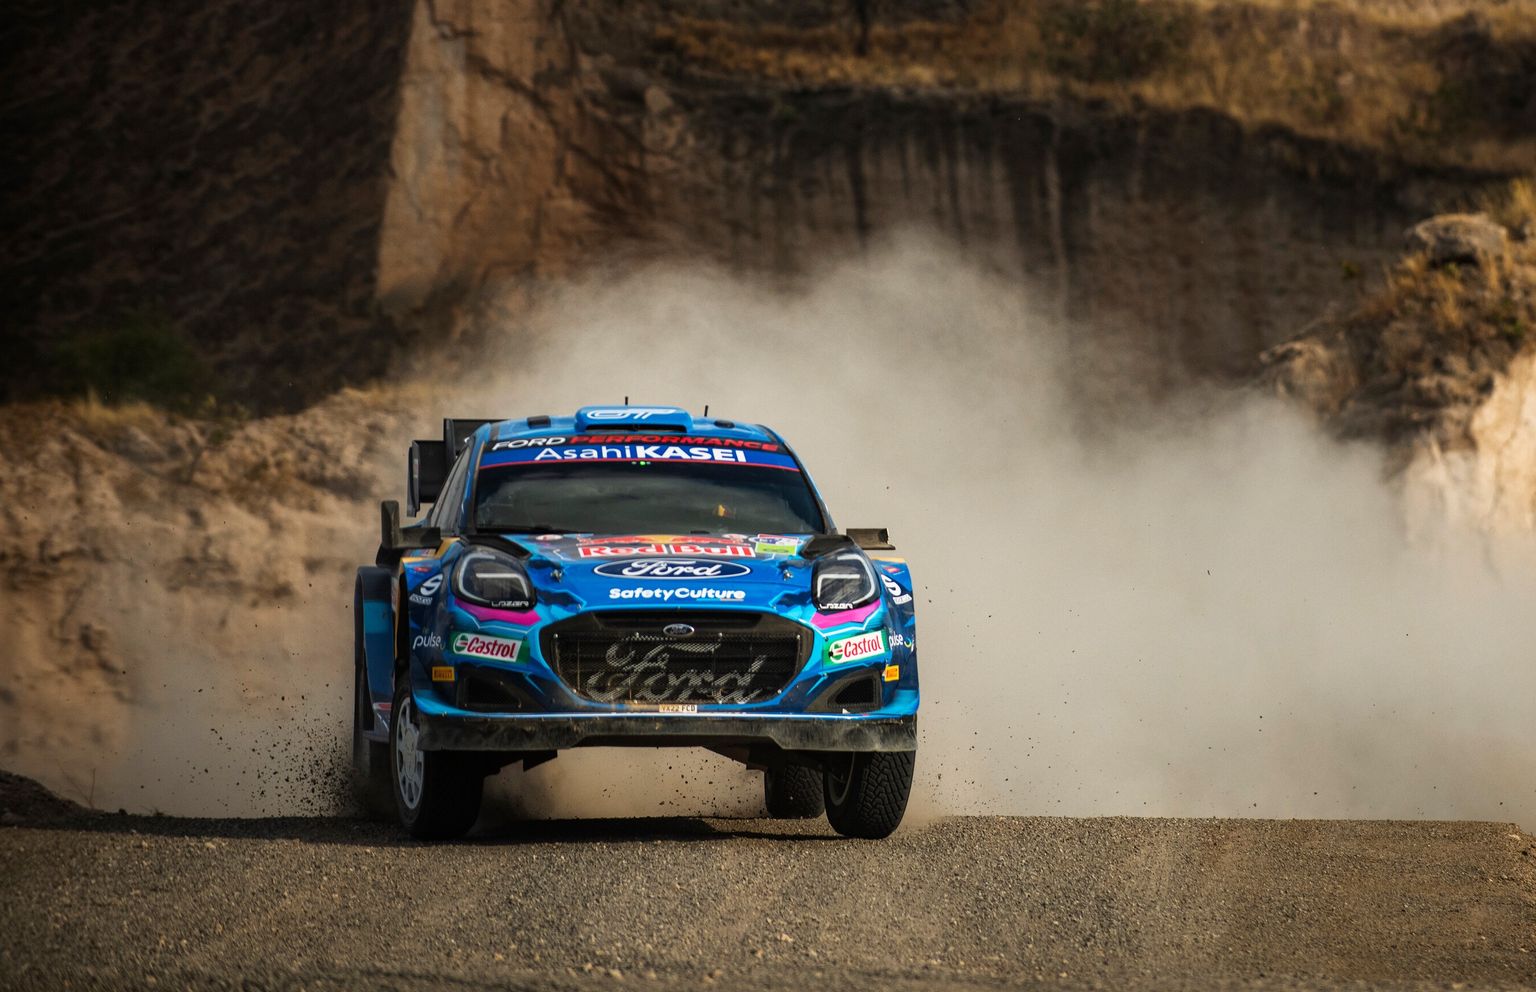 Ameerika Ühendriikides toimuv WRC-ralli tähendab, et MM-kalendrisse lisandub järjekordne kuursaralli.